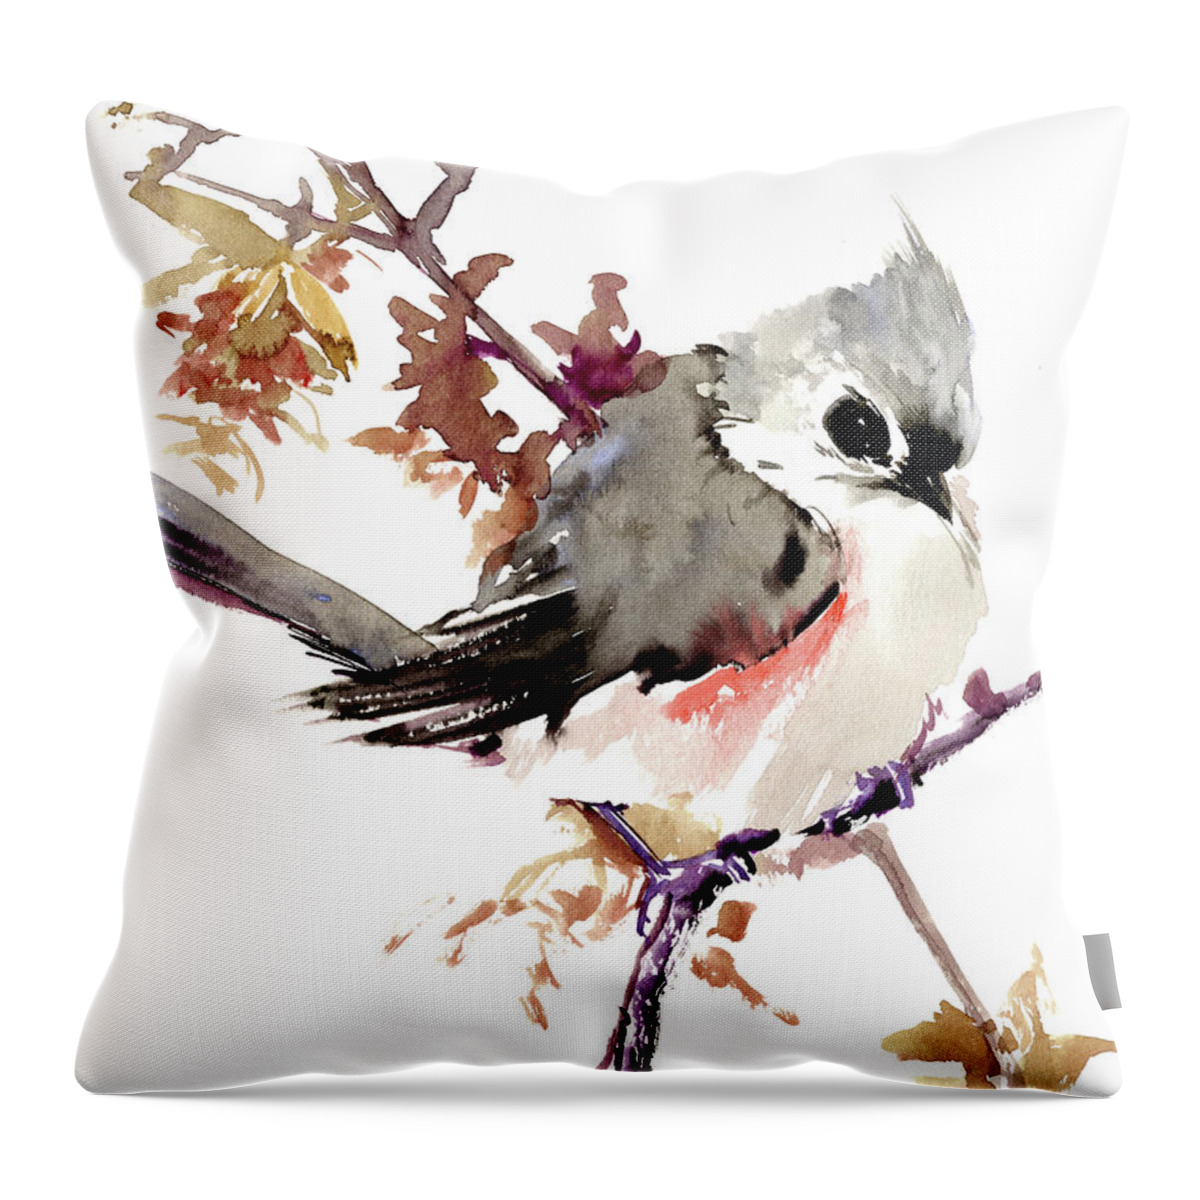 Titmouse Bird Design Throw Pillow featuring the painting Titmouse #1 by Suren Nersisyan